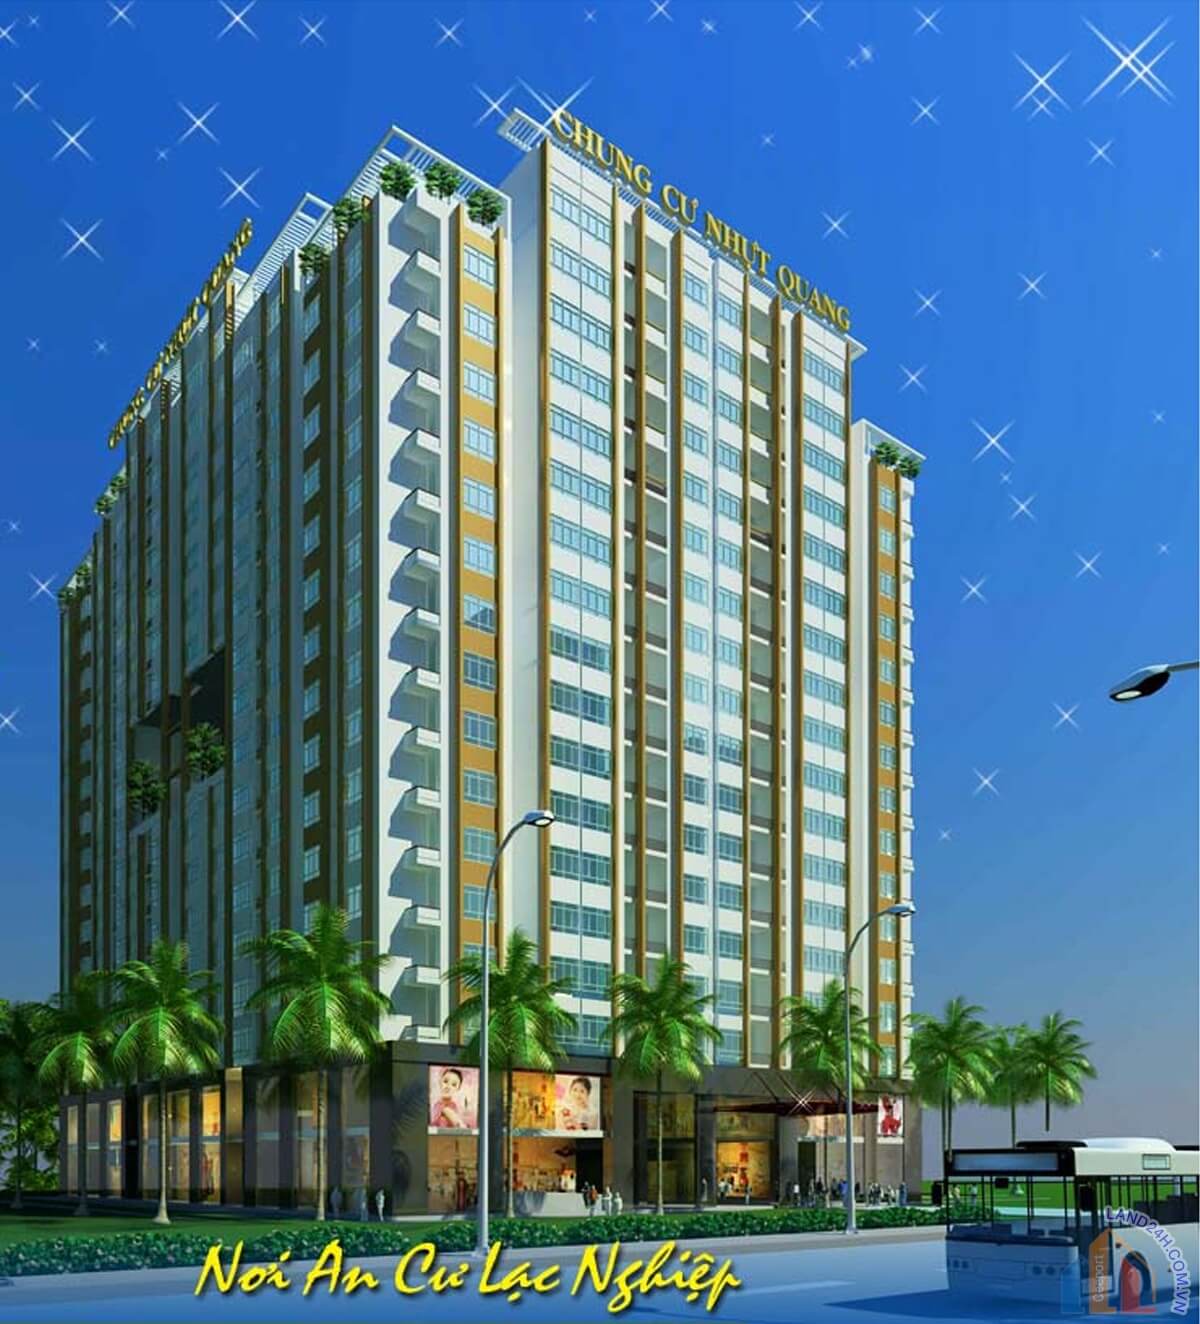 Nhựt Quang Apartment là dự án căn hộ cao cấp quy mô gồm 1 block căn hộ cao 18 tầng